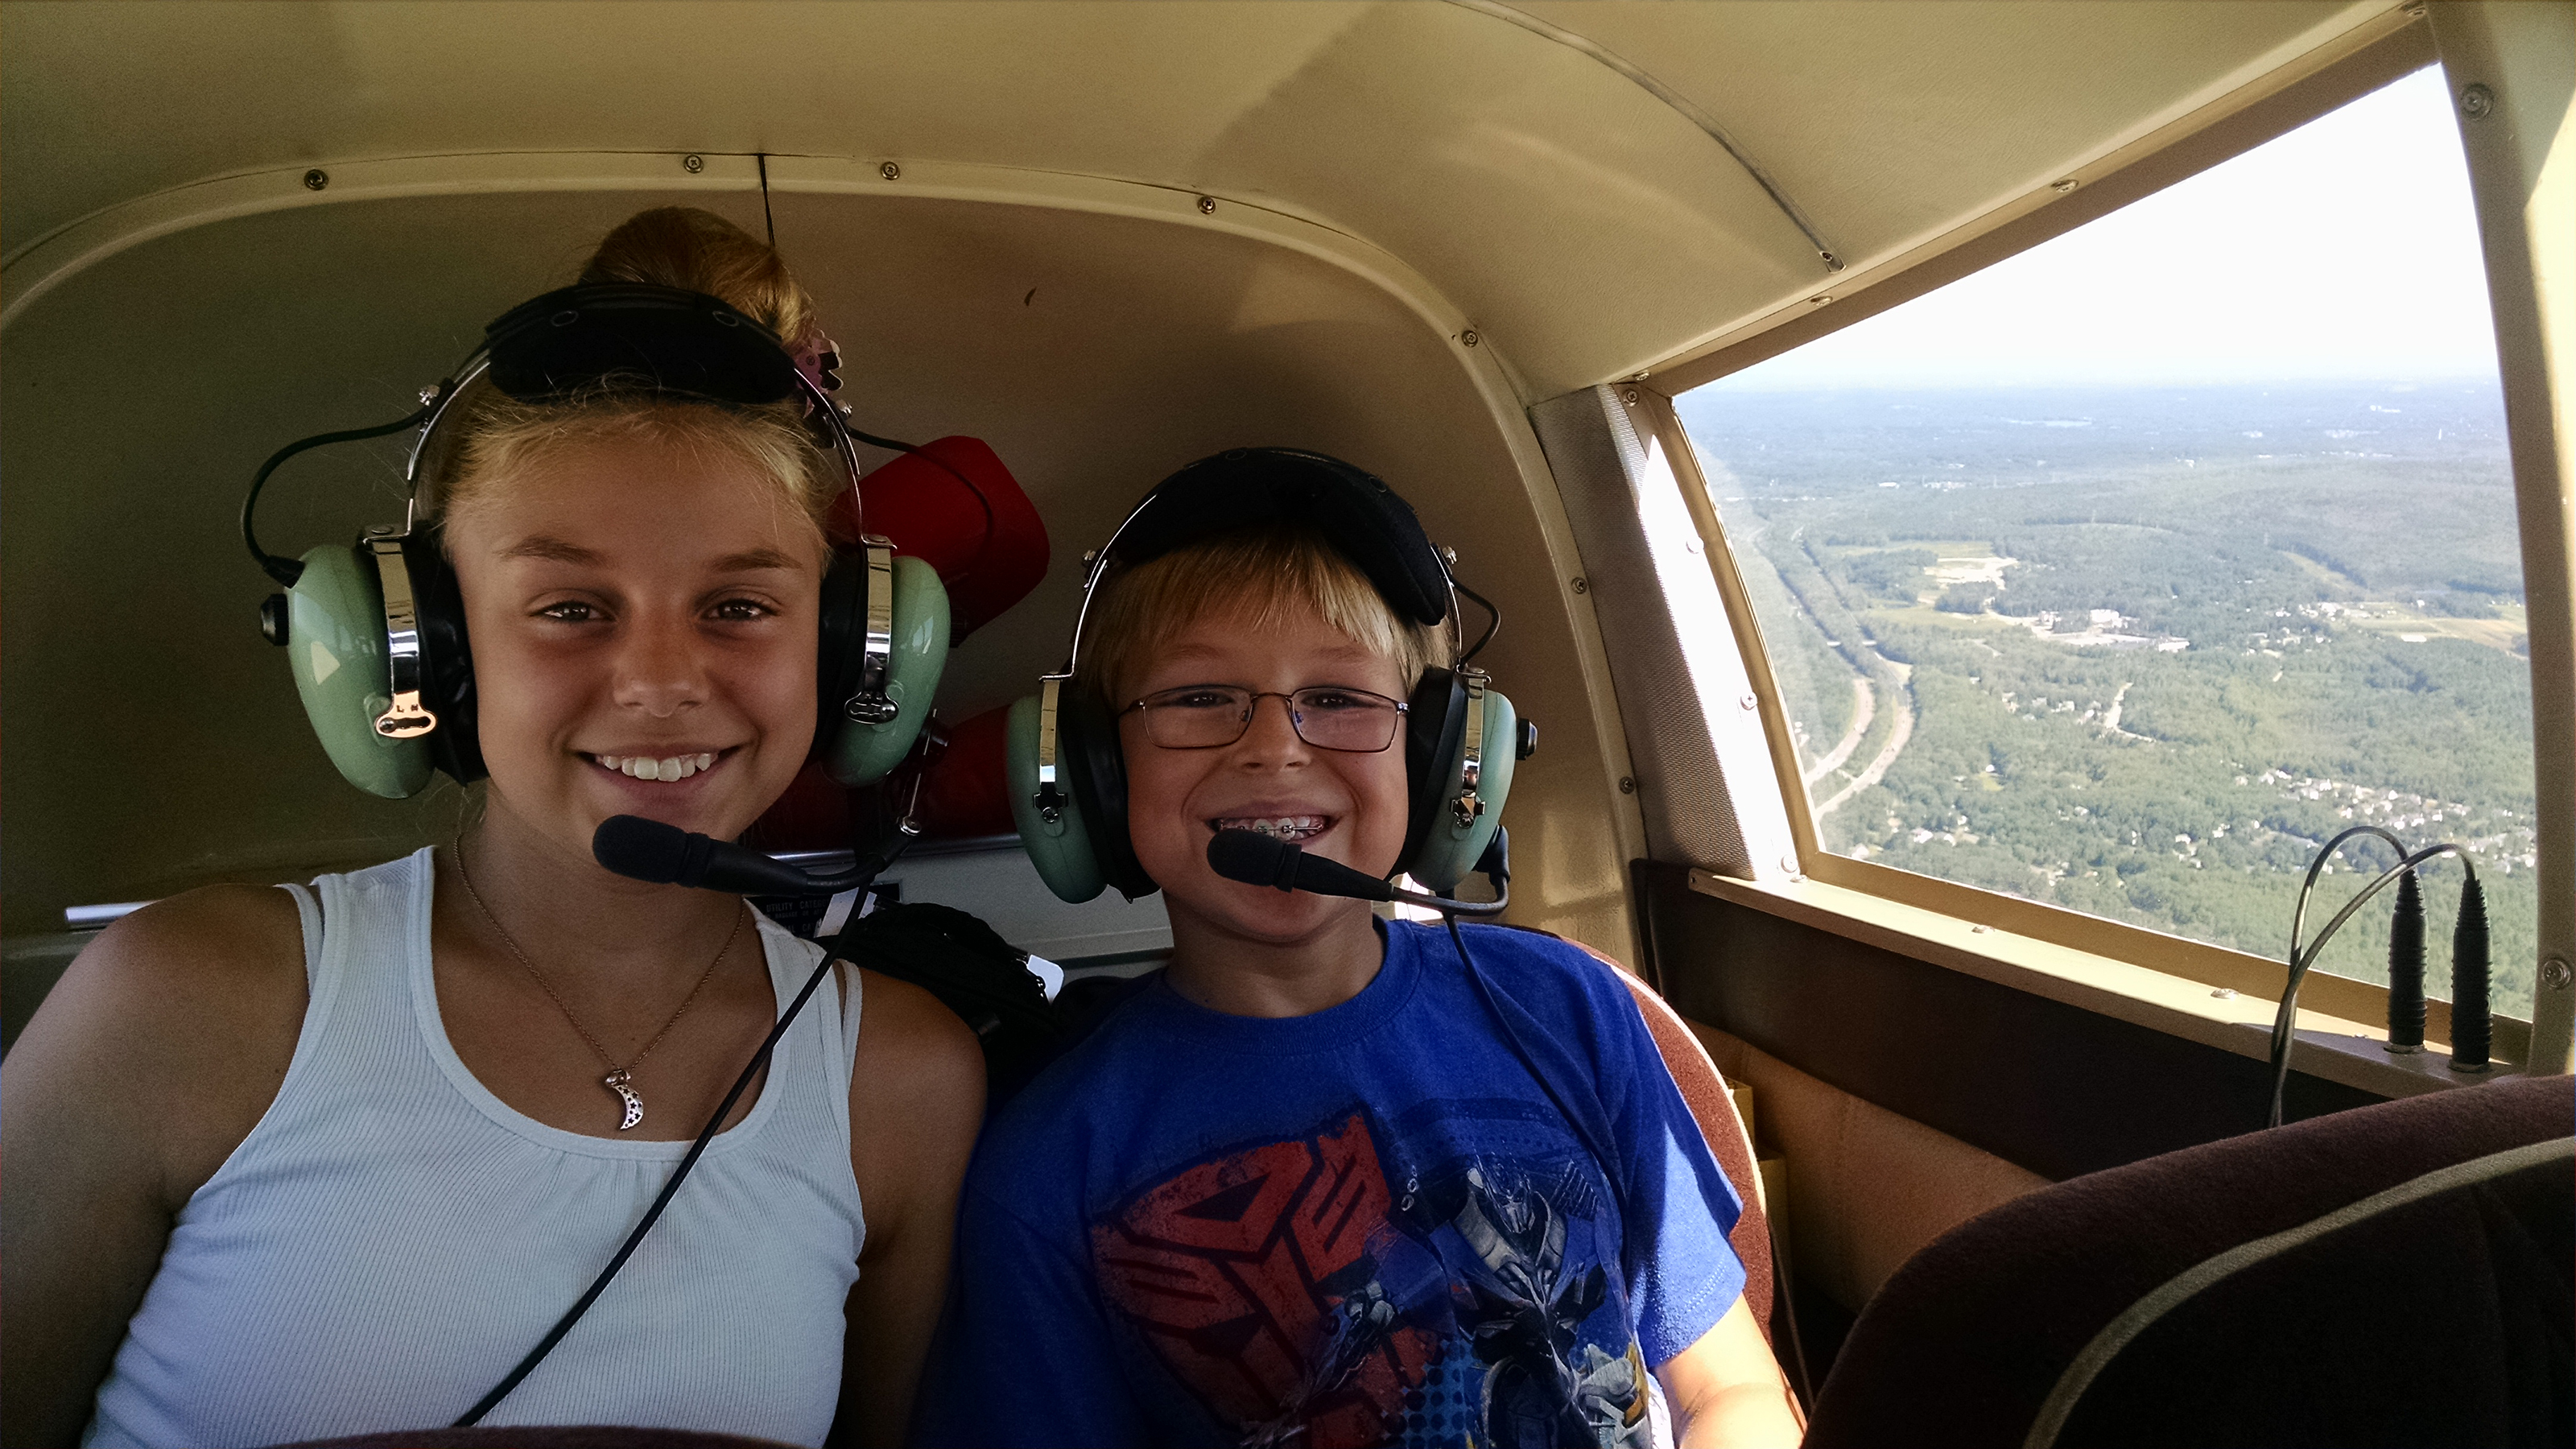 Samantha Duarte, 12, and Nathan Duarte, 9, enjoy a flight. Photo courtesy of Bryan Duarte.